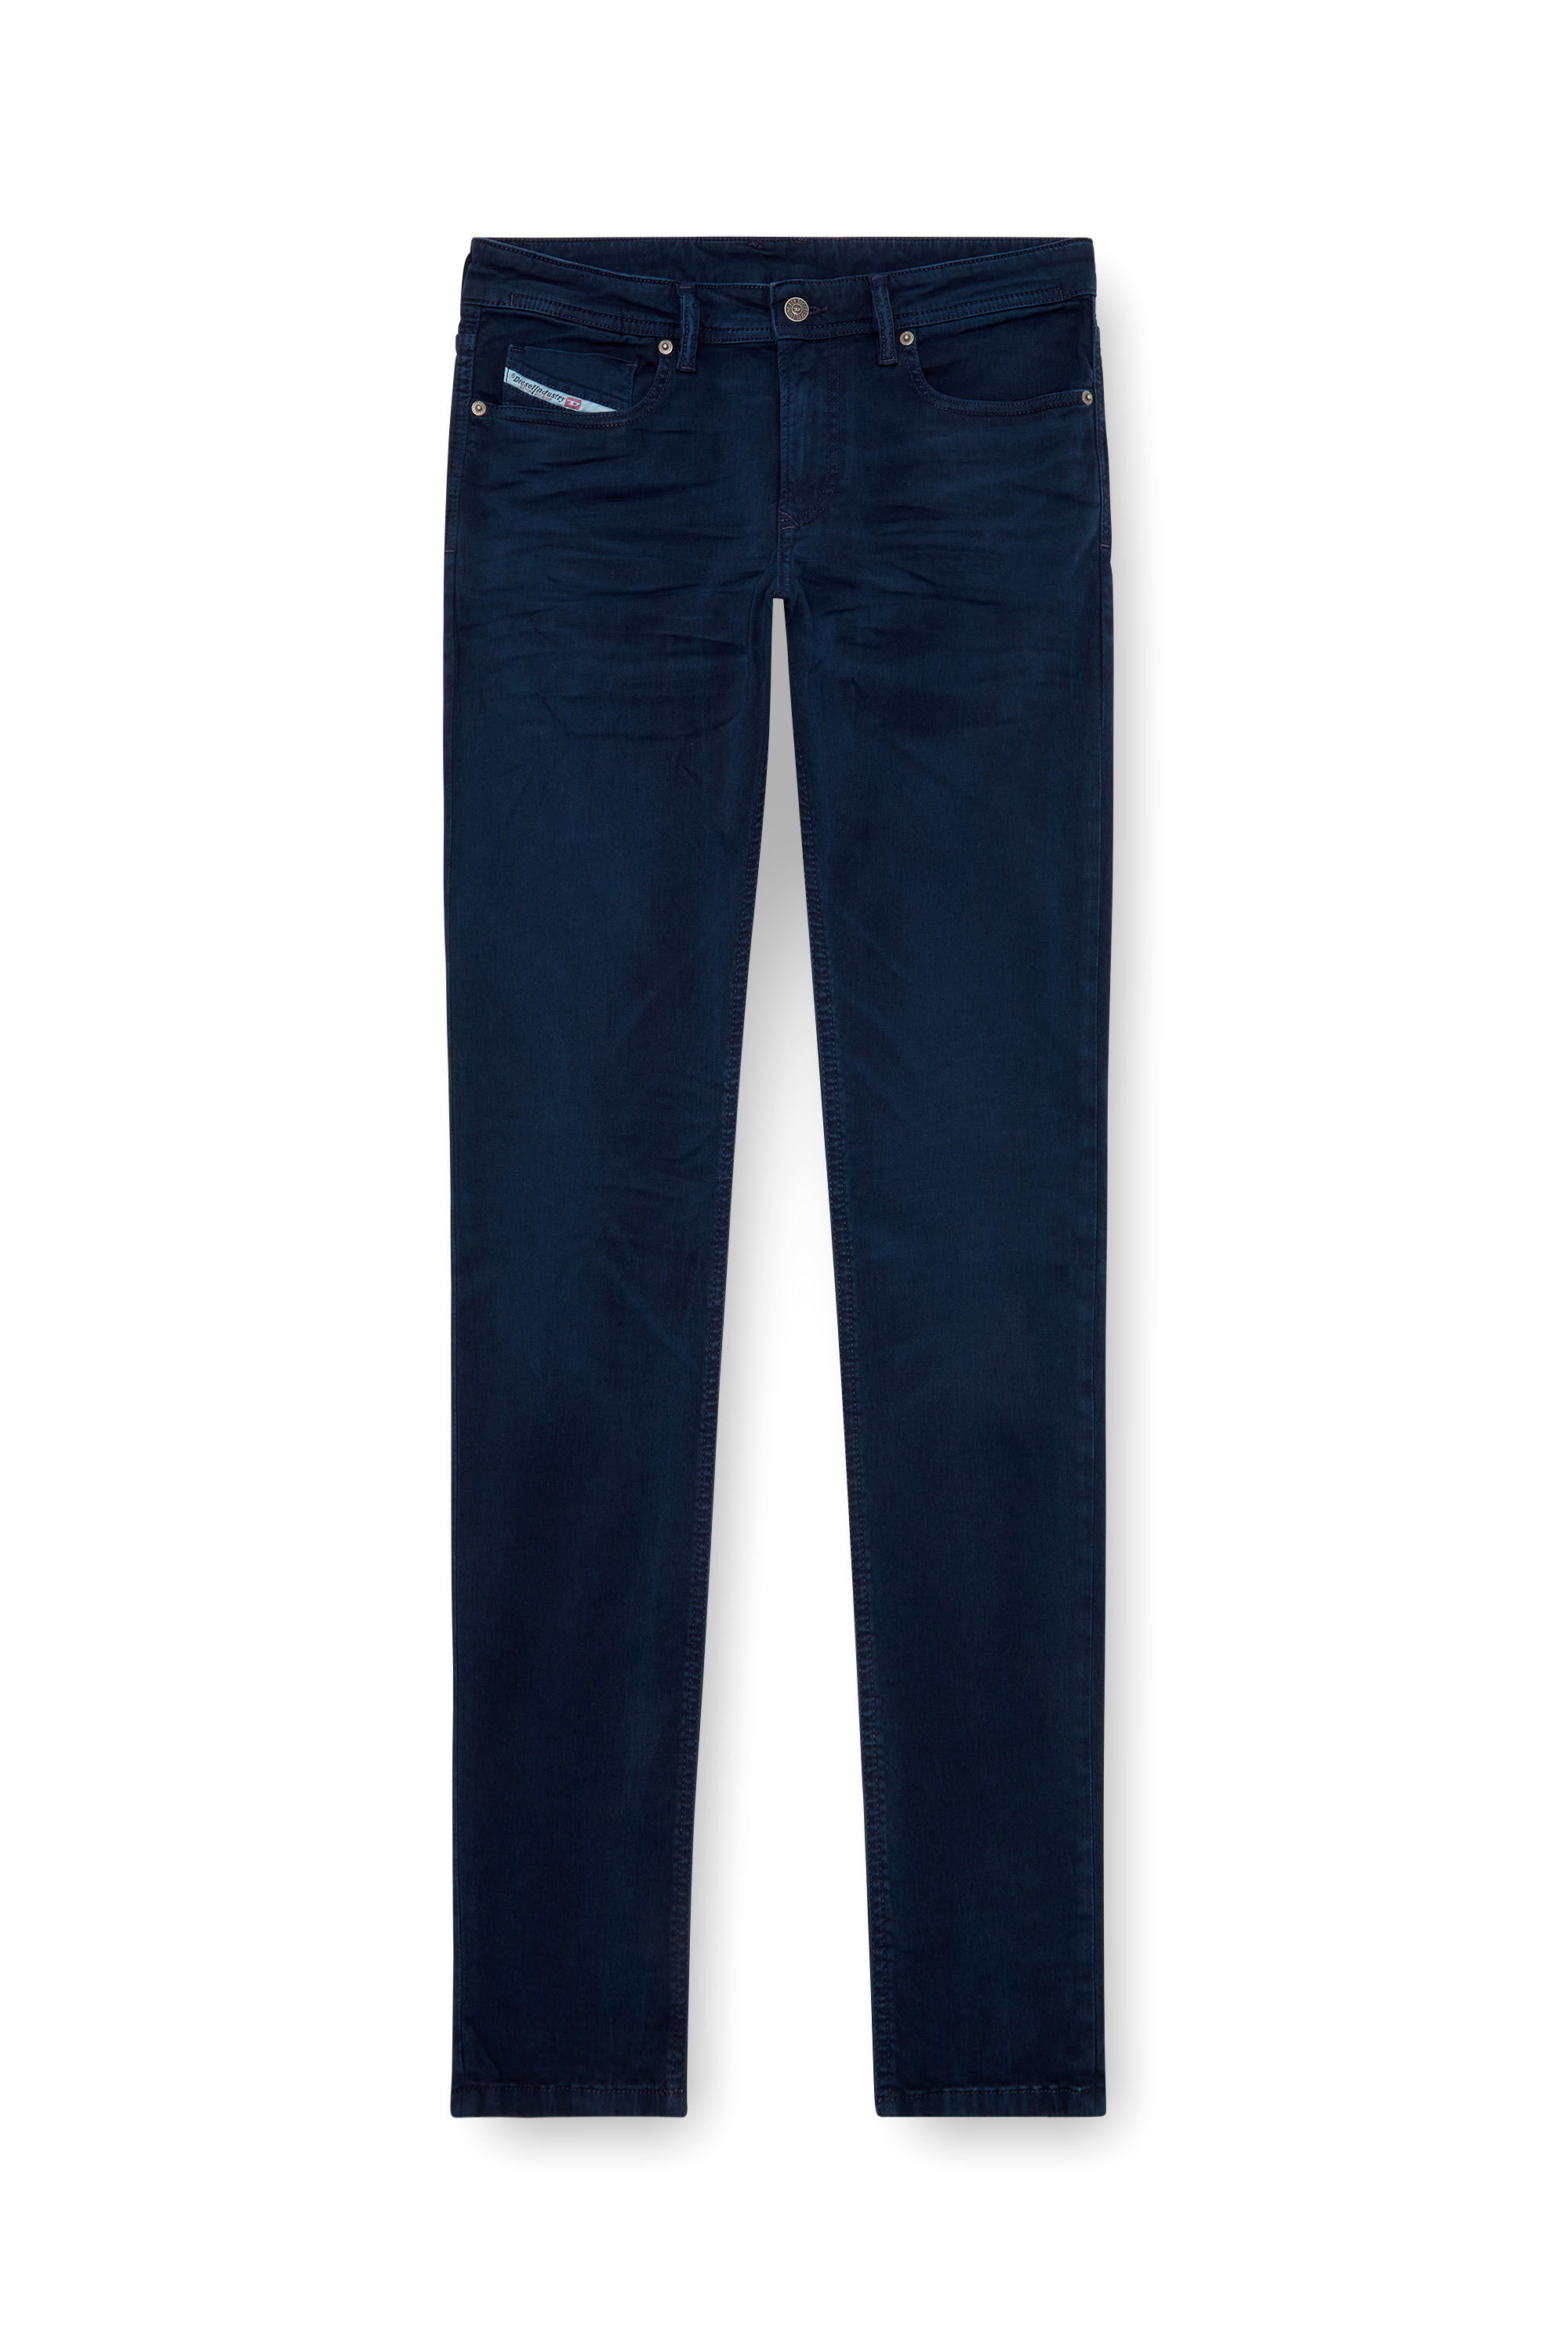 Diesel - Man Skinny Jeans 1979 Sleenker 0ENAK, Dark Blue - Image 2